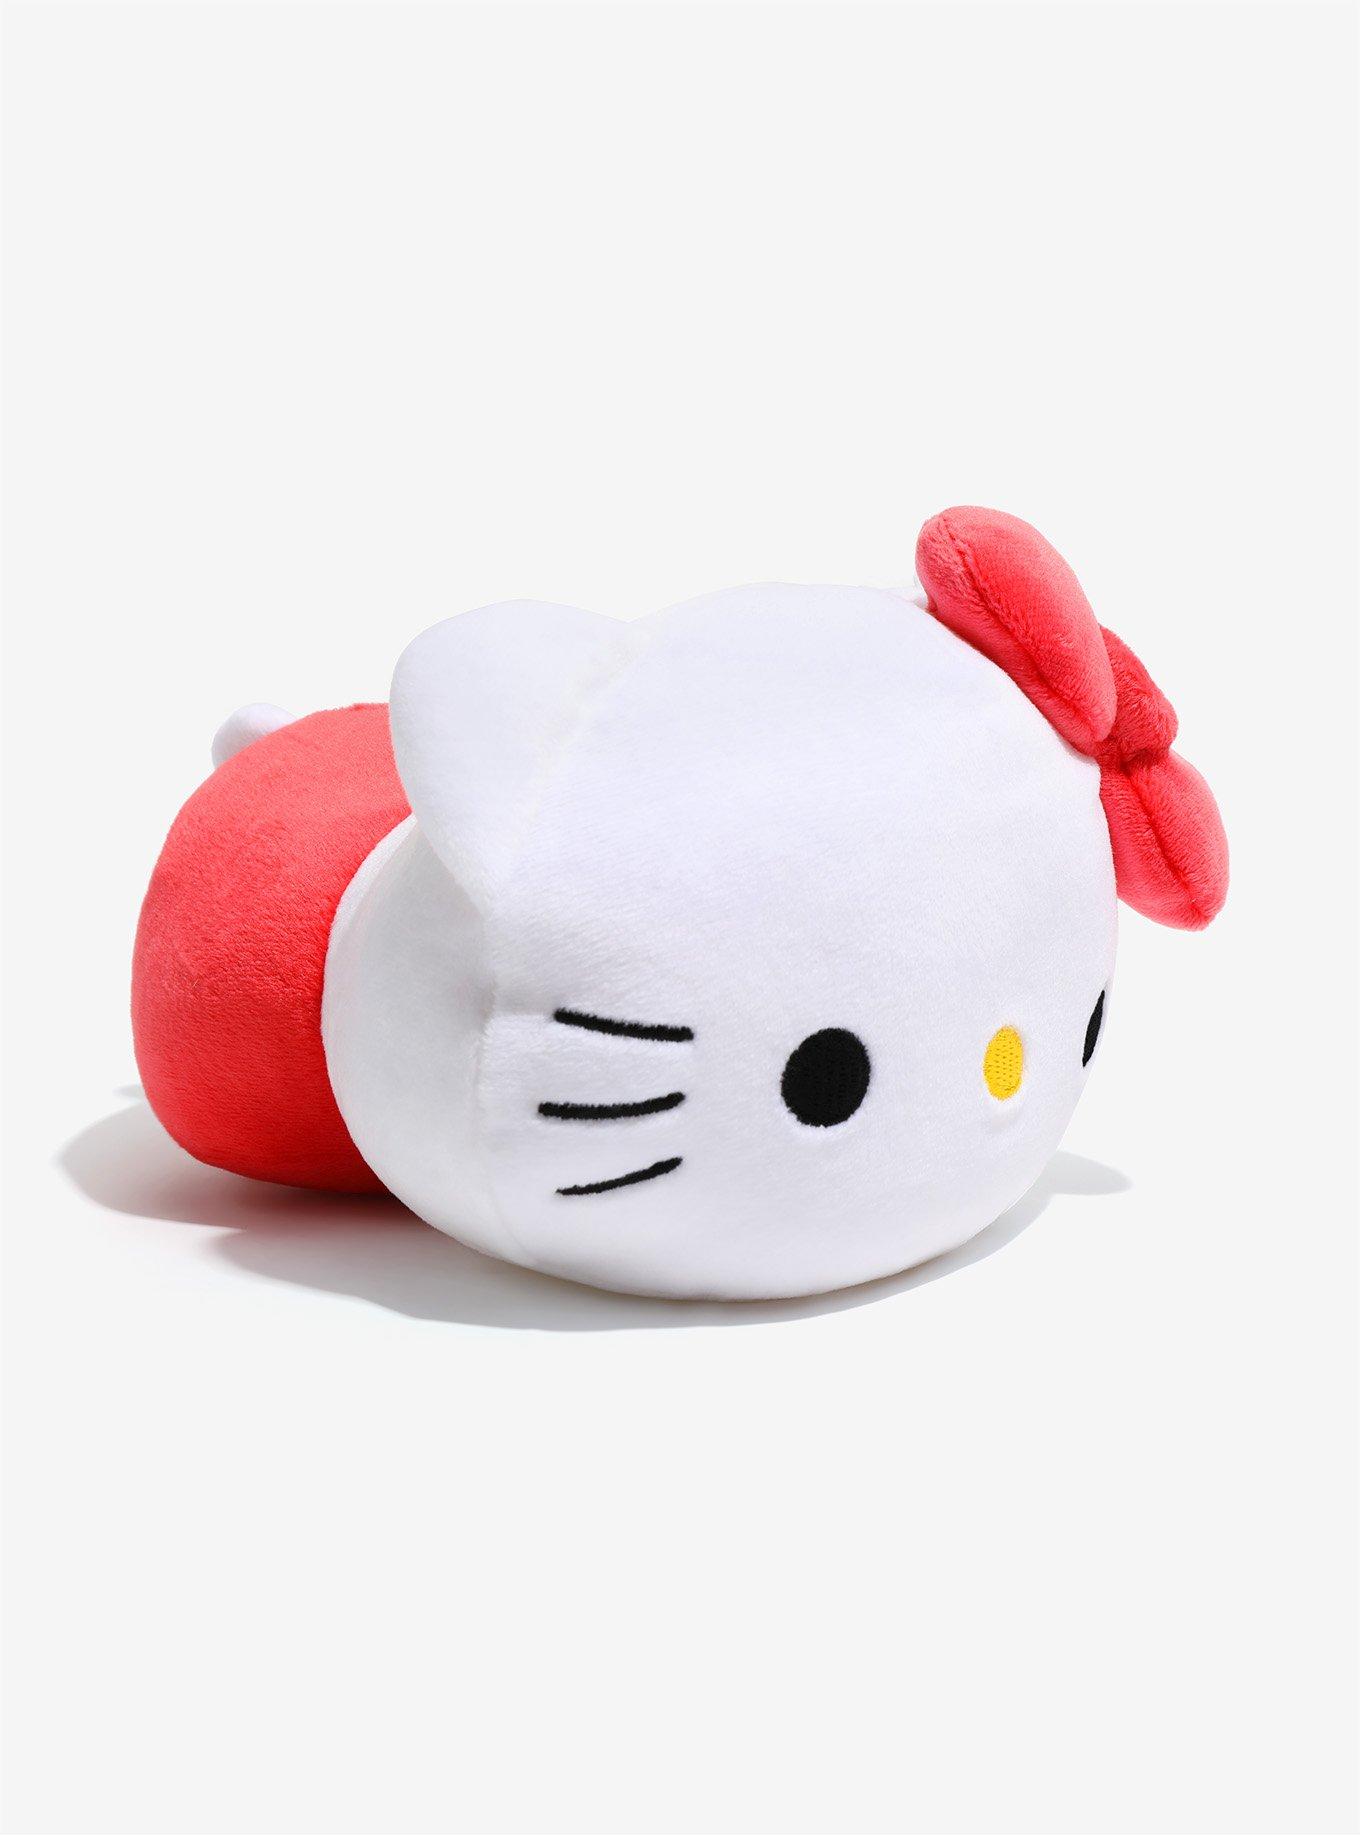 Sanrio X Moni Moni Animals Hello Kitty Small Plush, , alternate